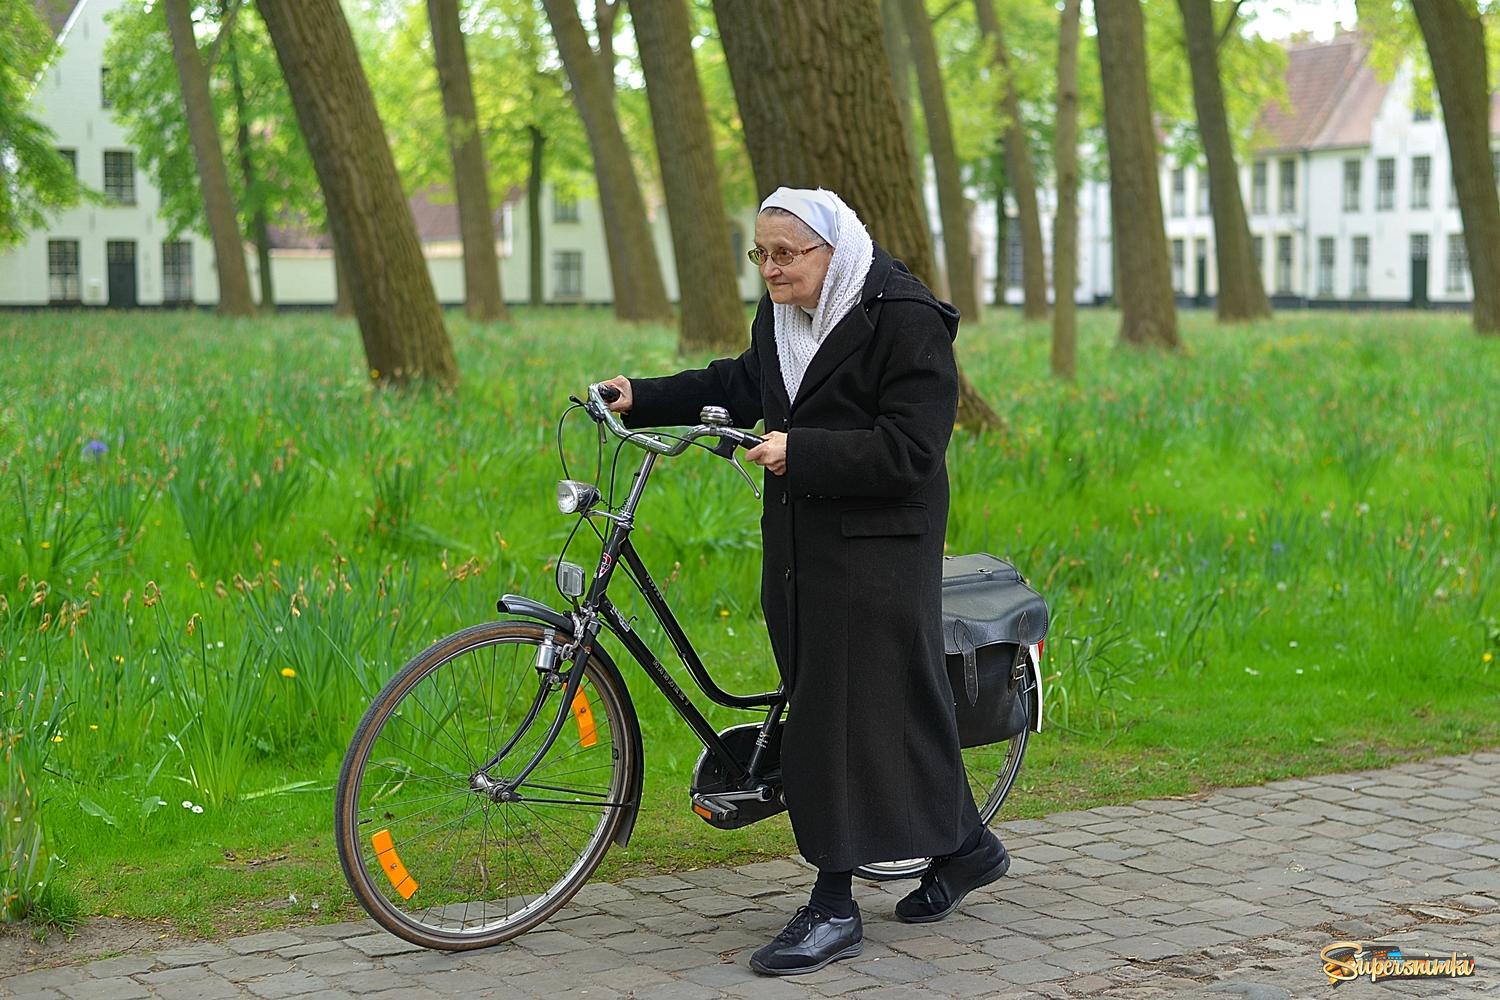 The biking beguine of Bruges.